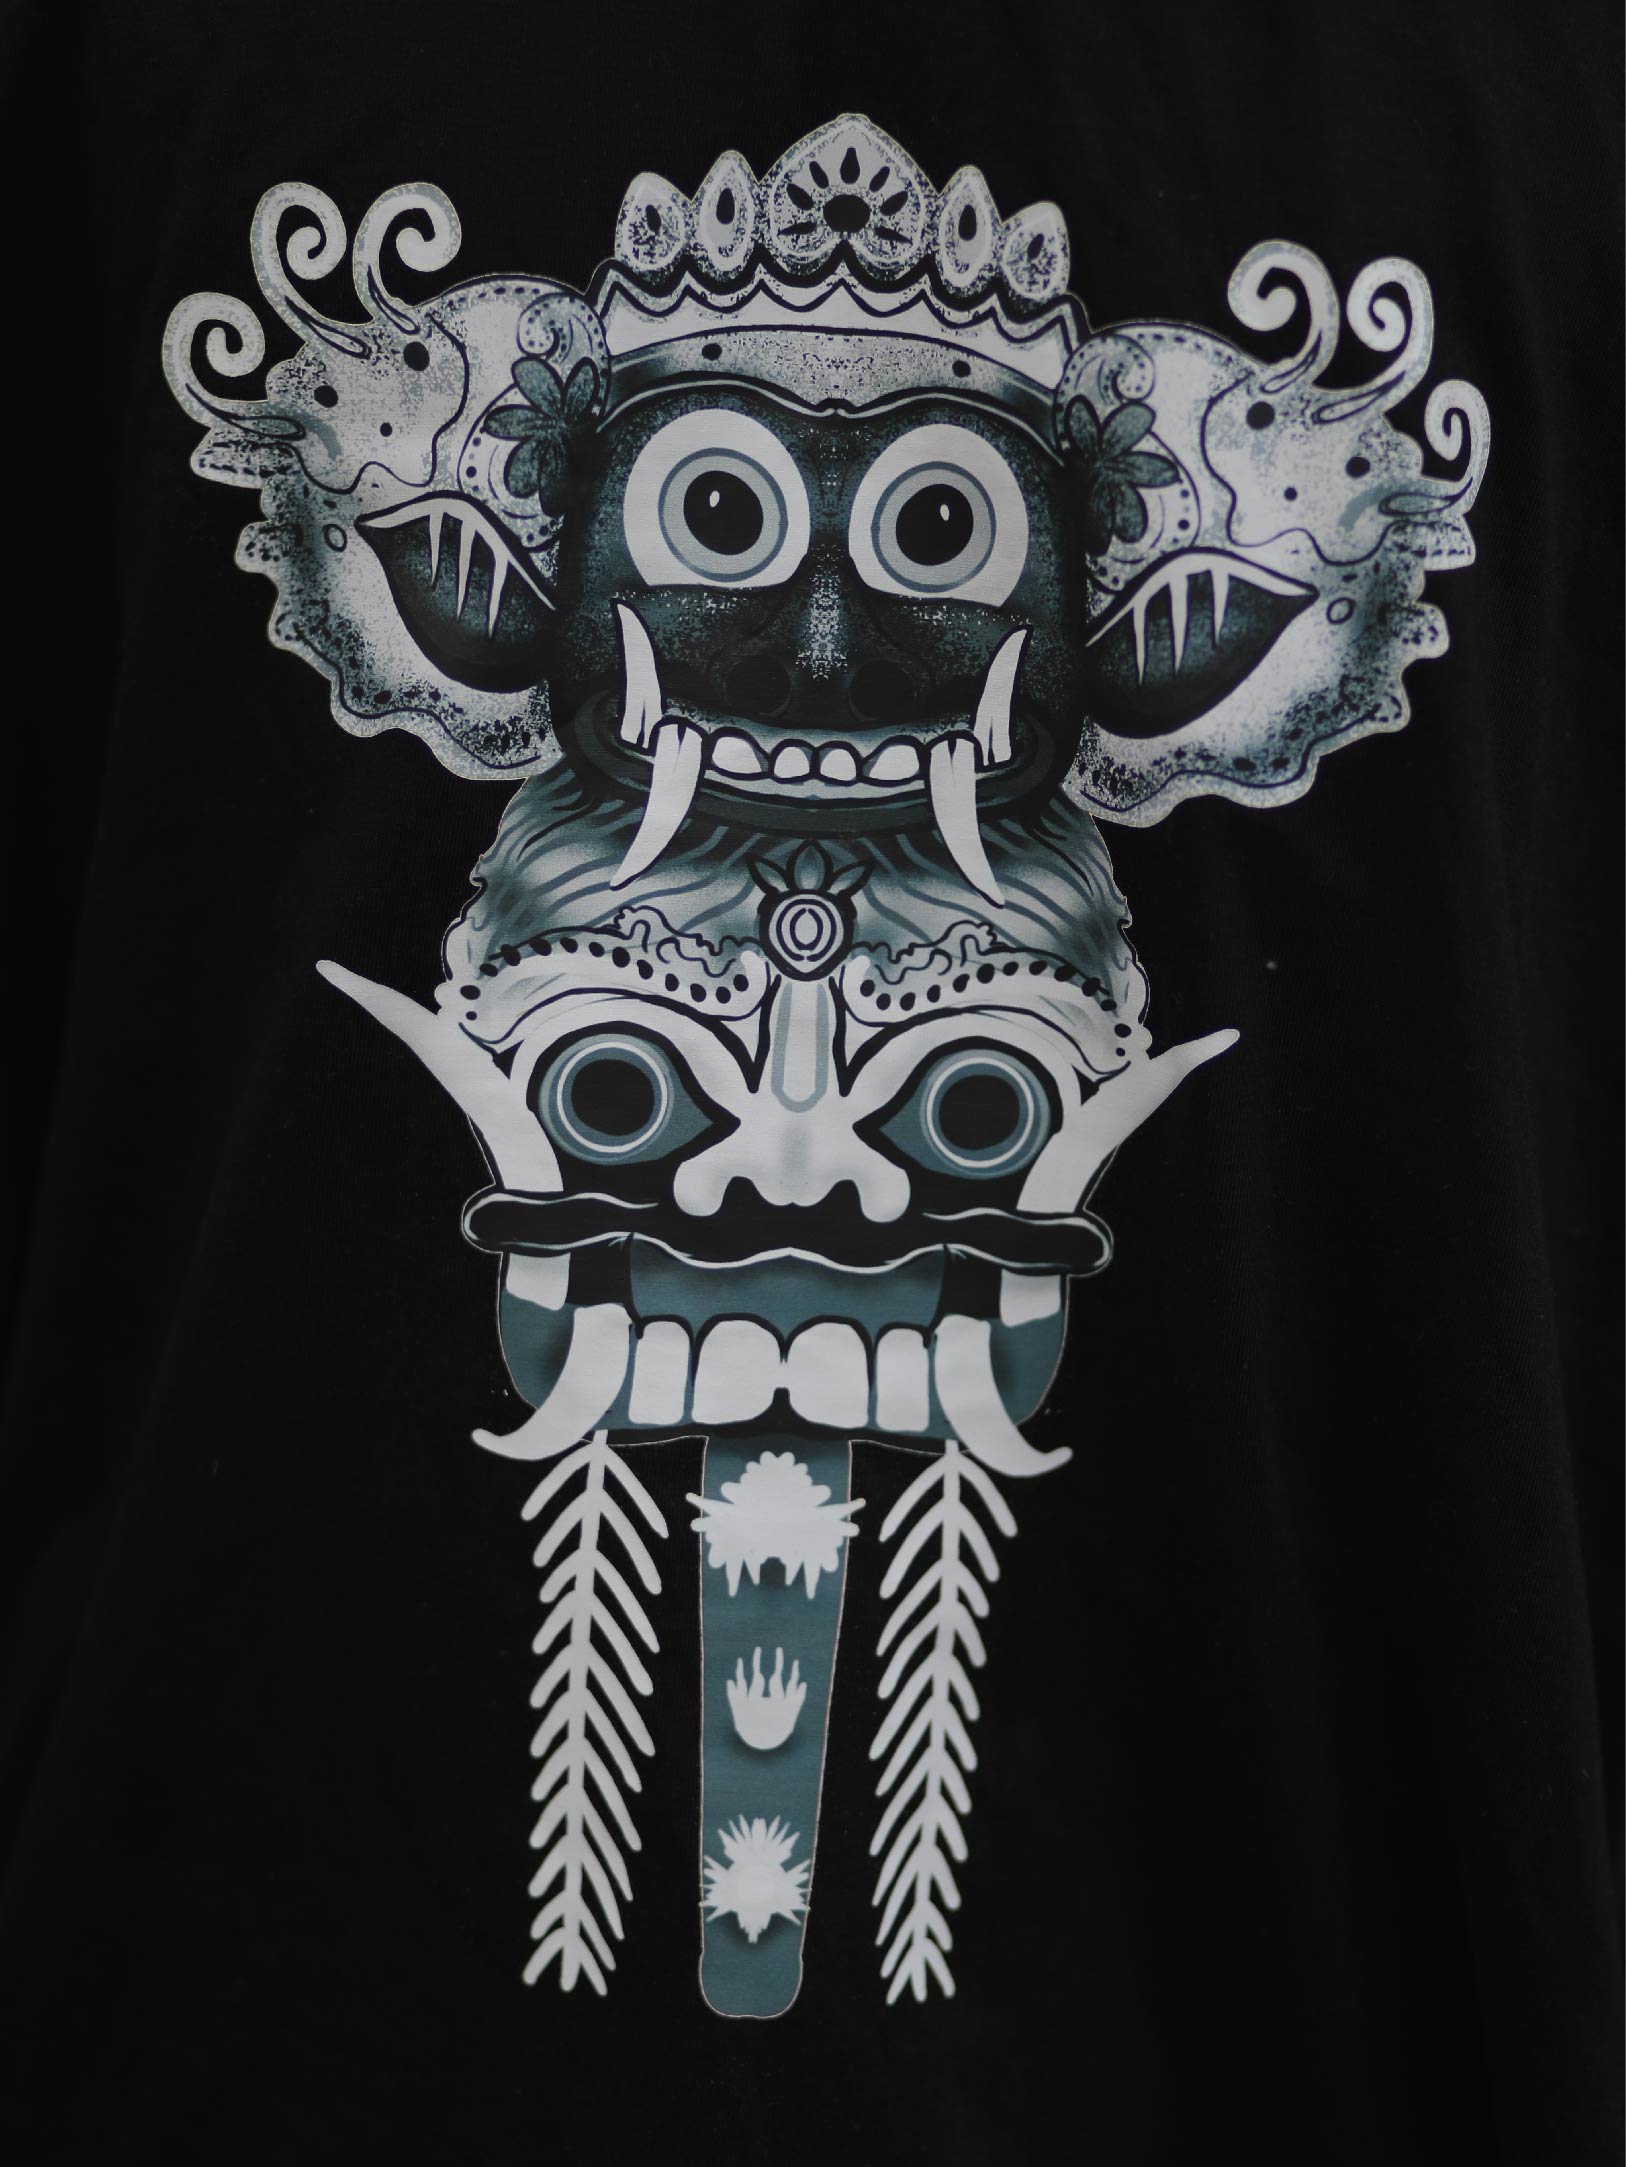 Buy Indonesian Mask Oversized  Drop-Shoulder T-Shirt